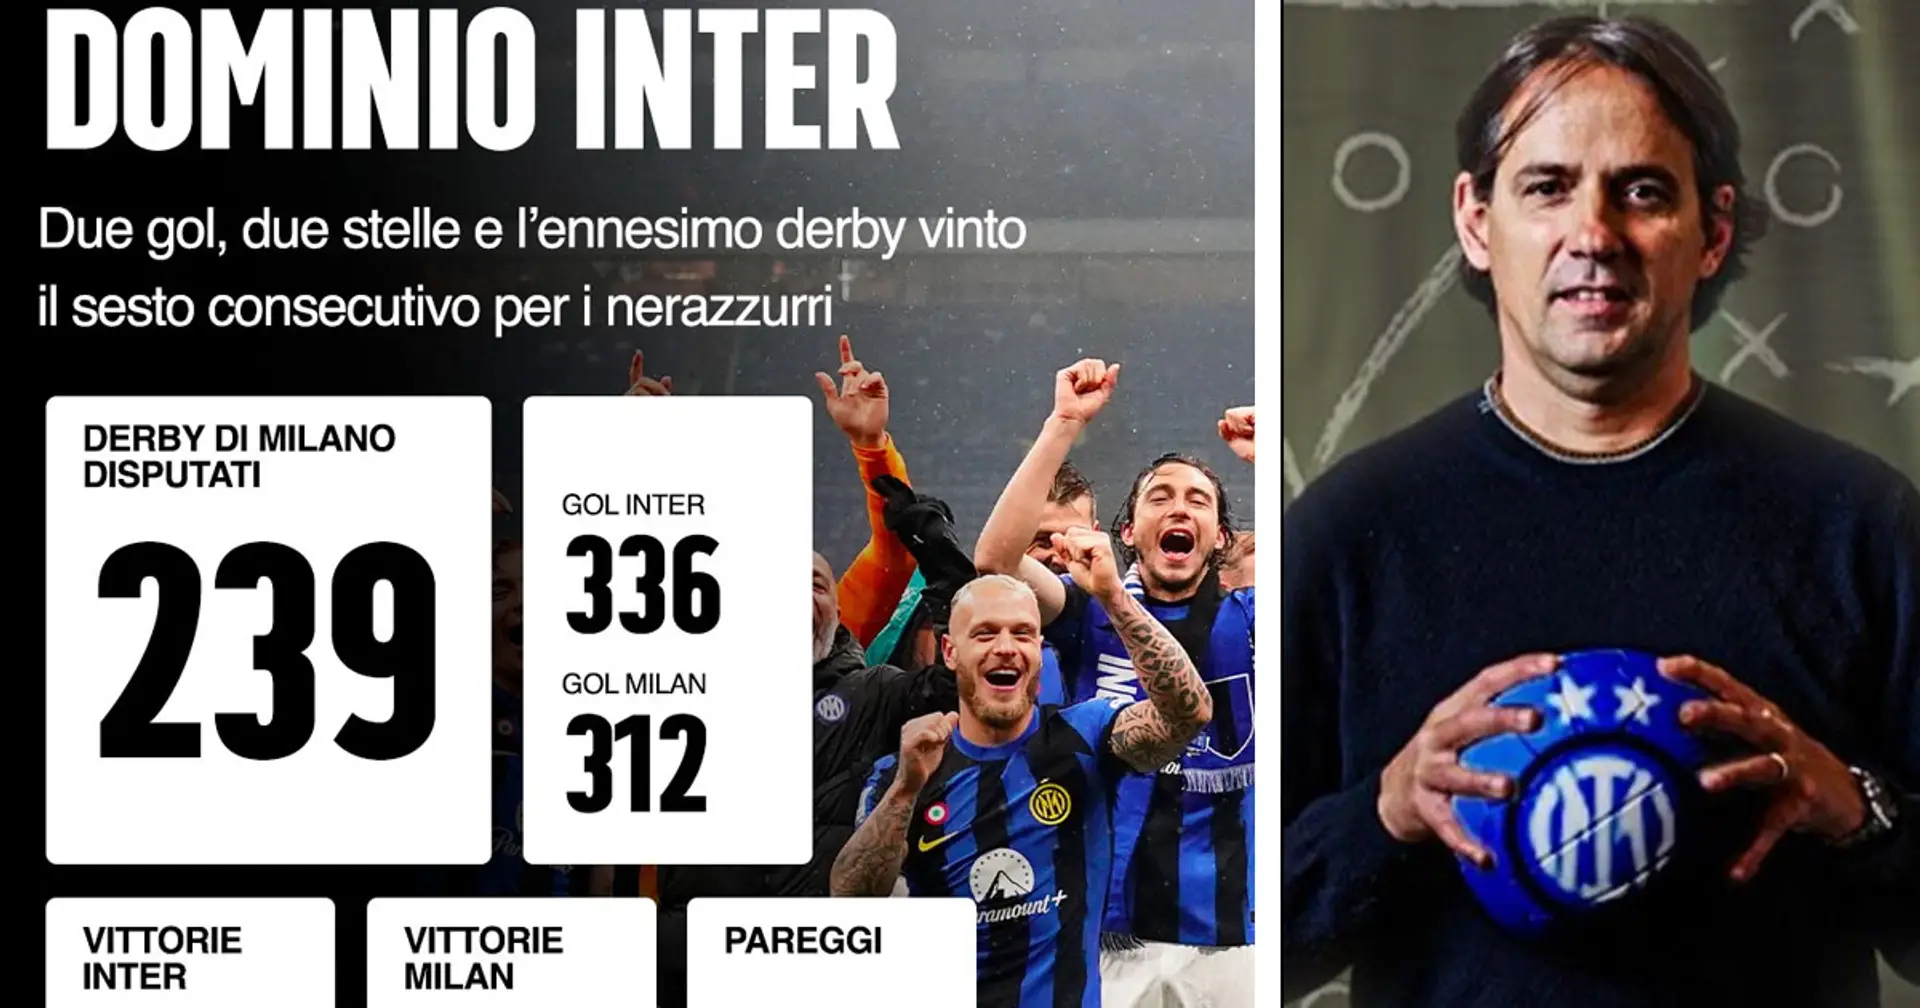 Tutti i numeri del dominio dell'Inter nei confronti del Milan nel Derby di Milano